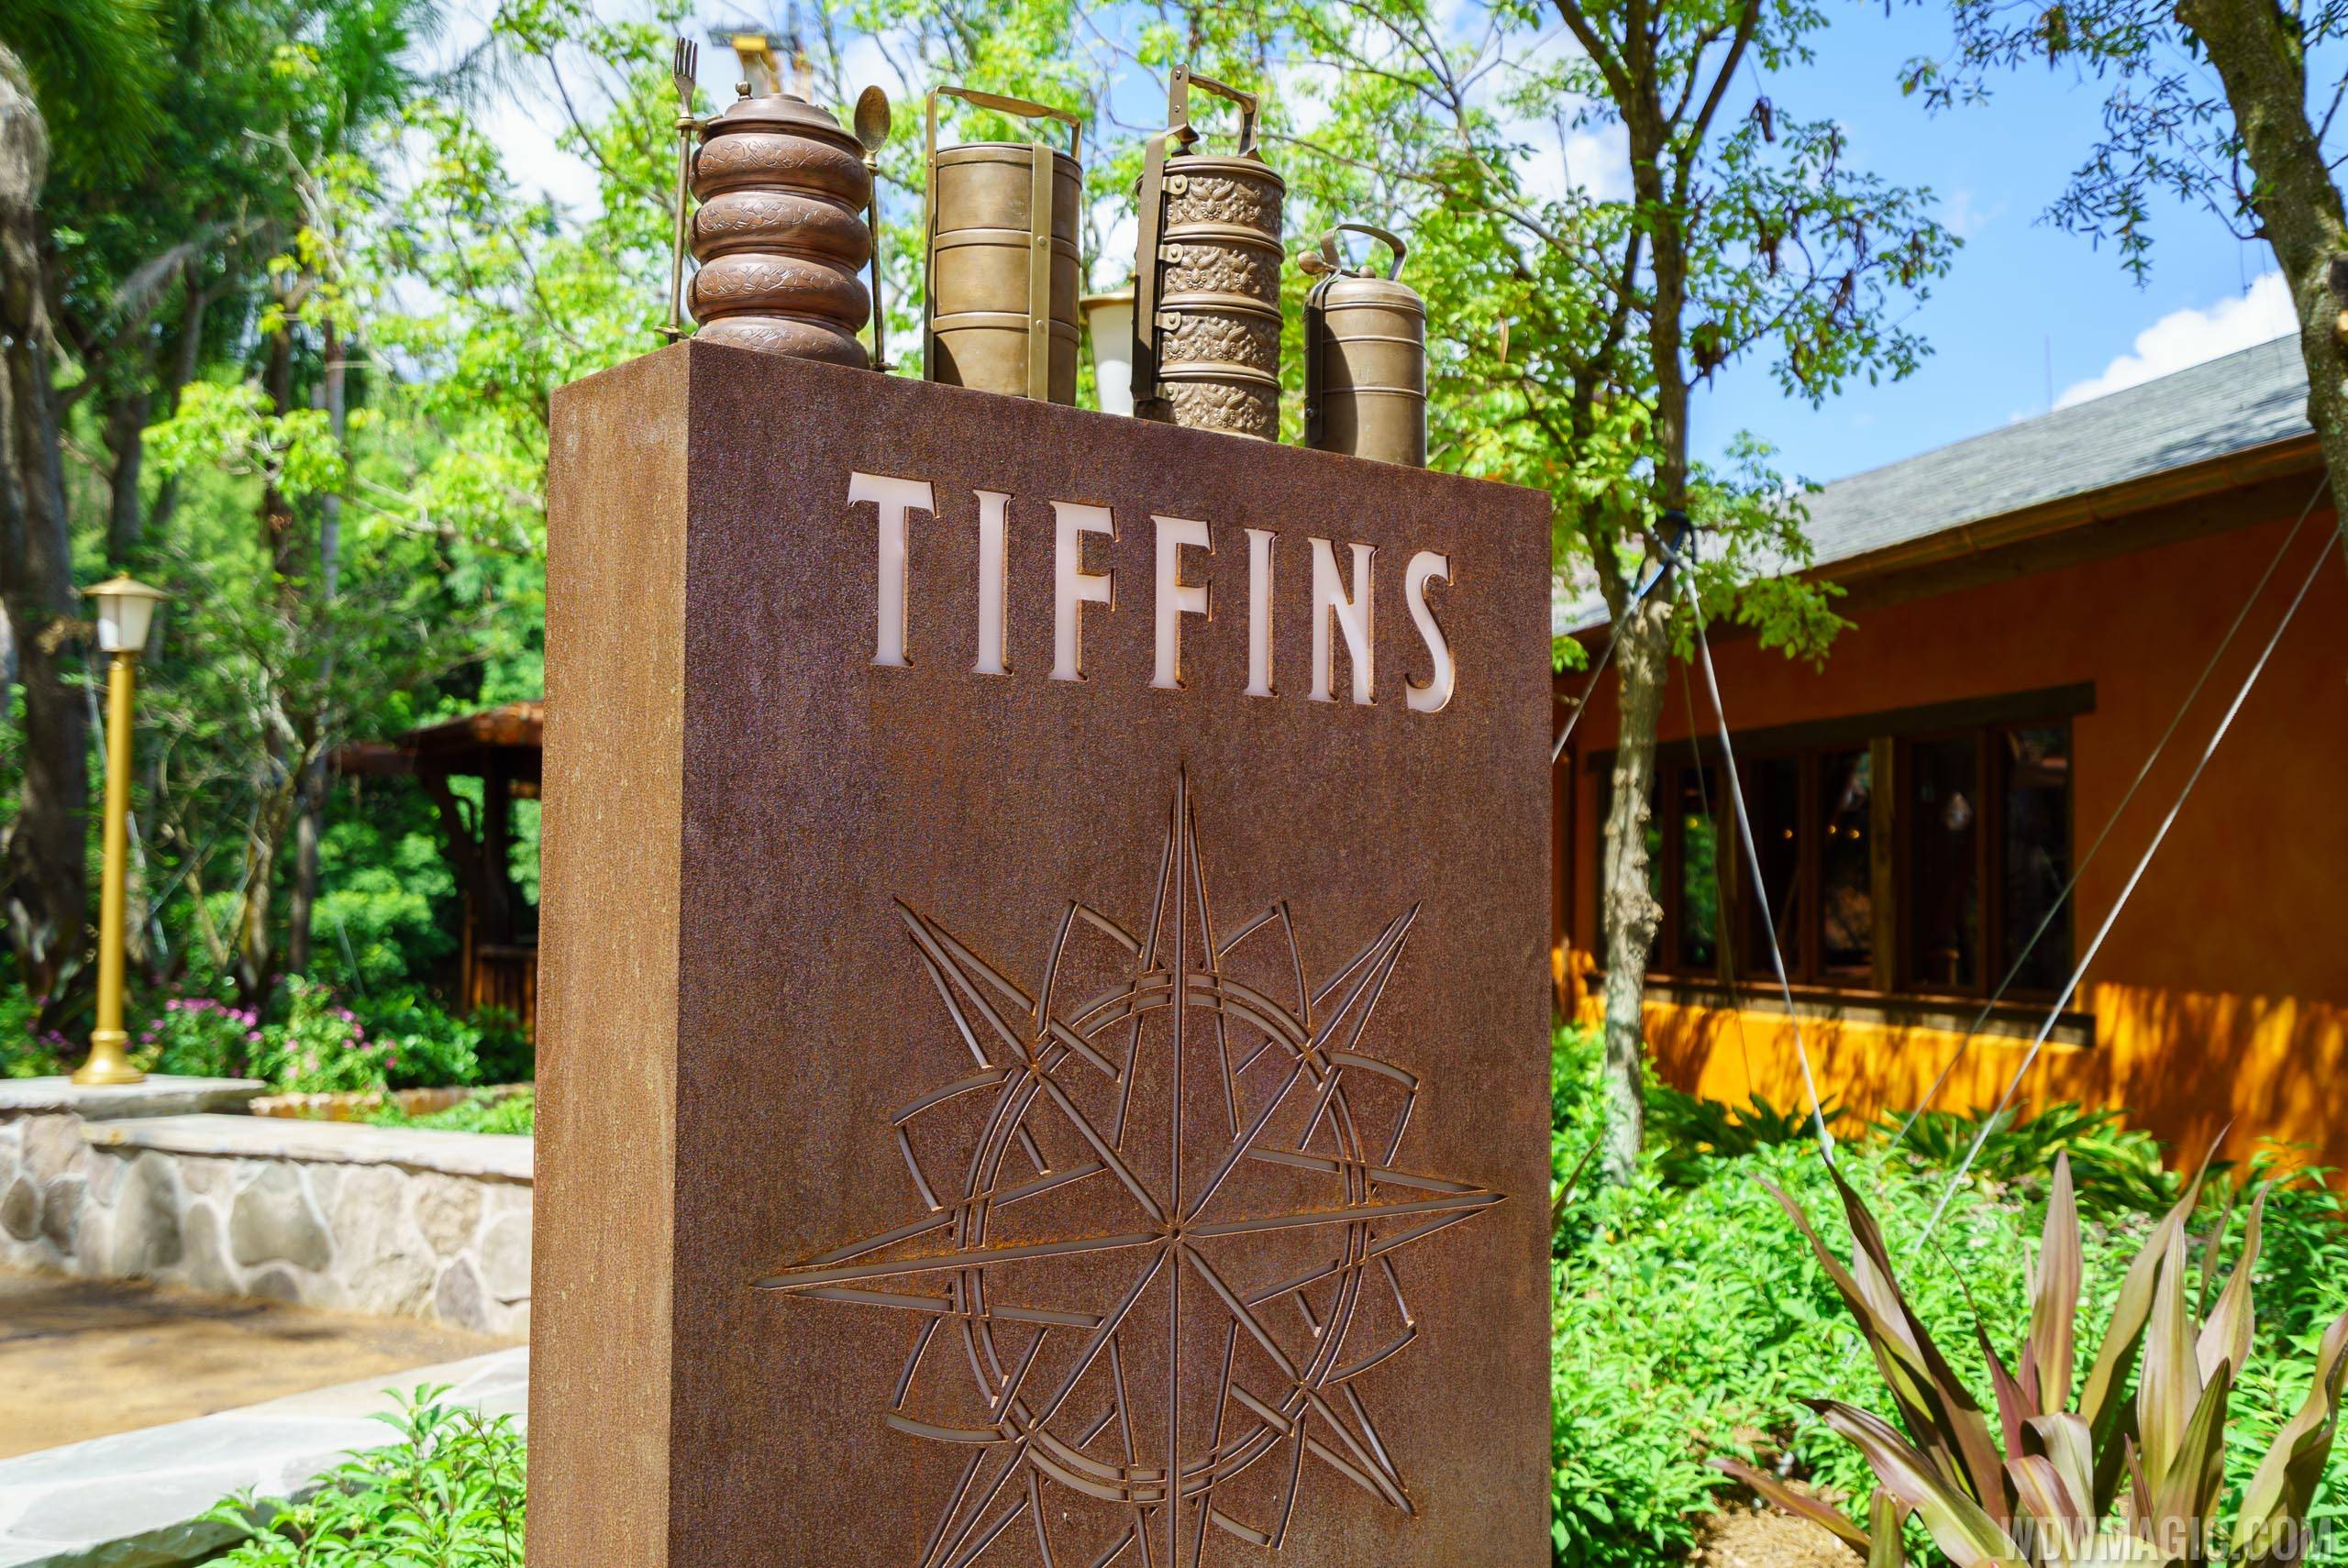 Tiffins - Signage